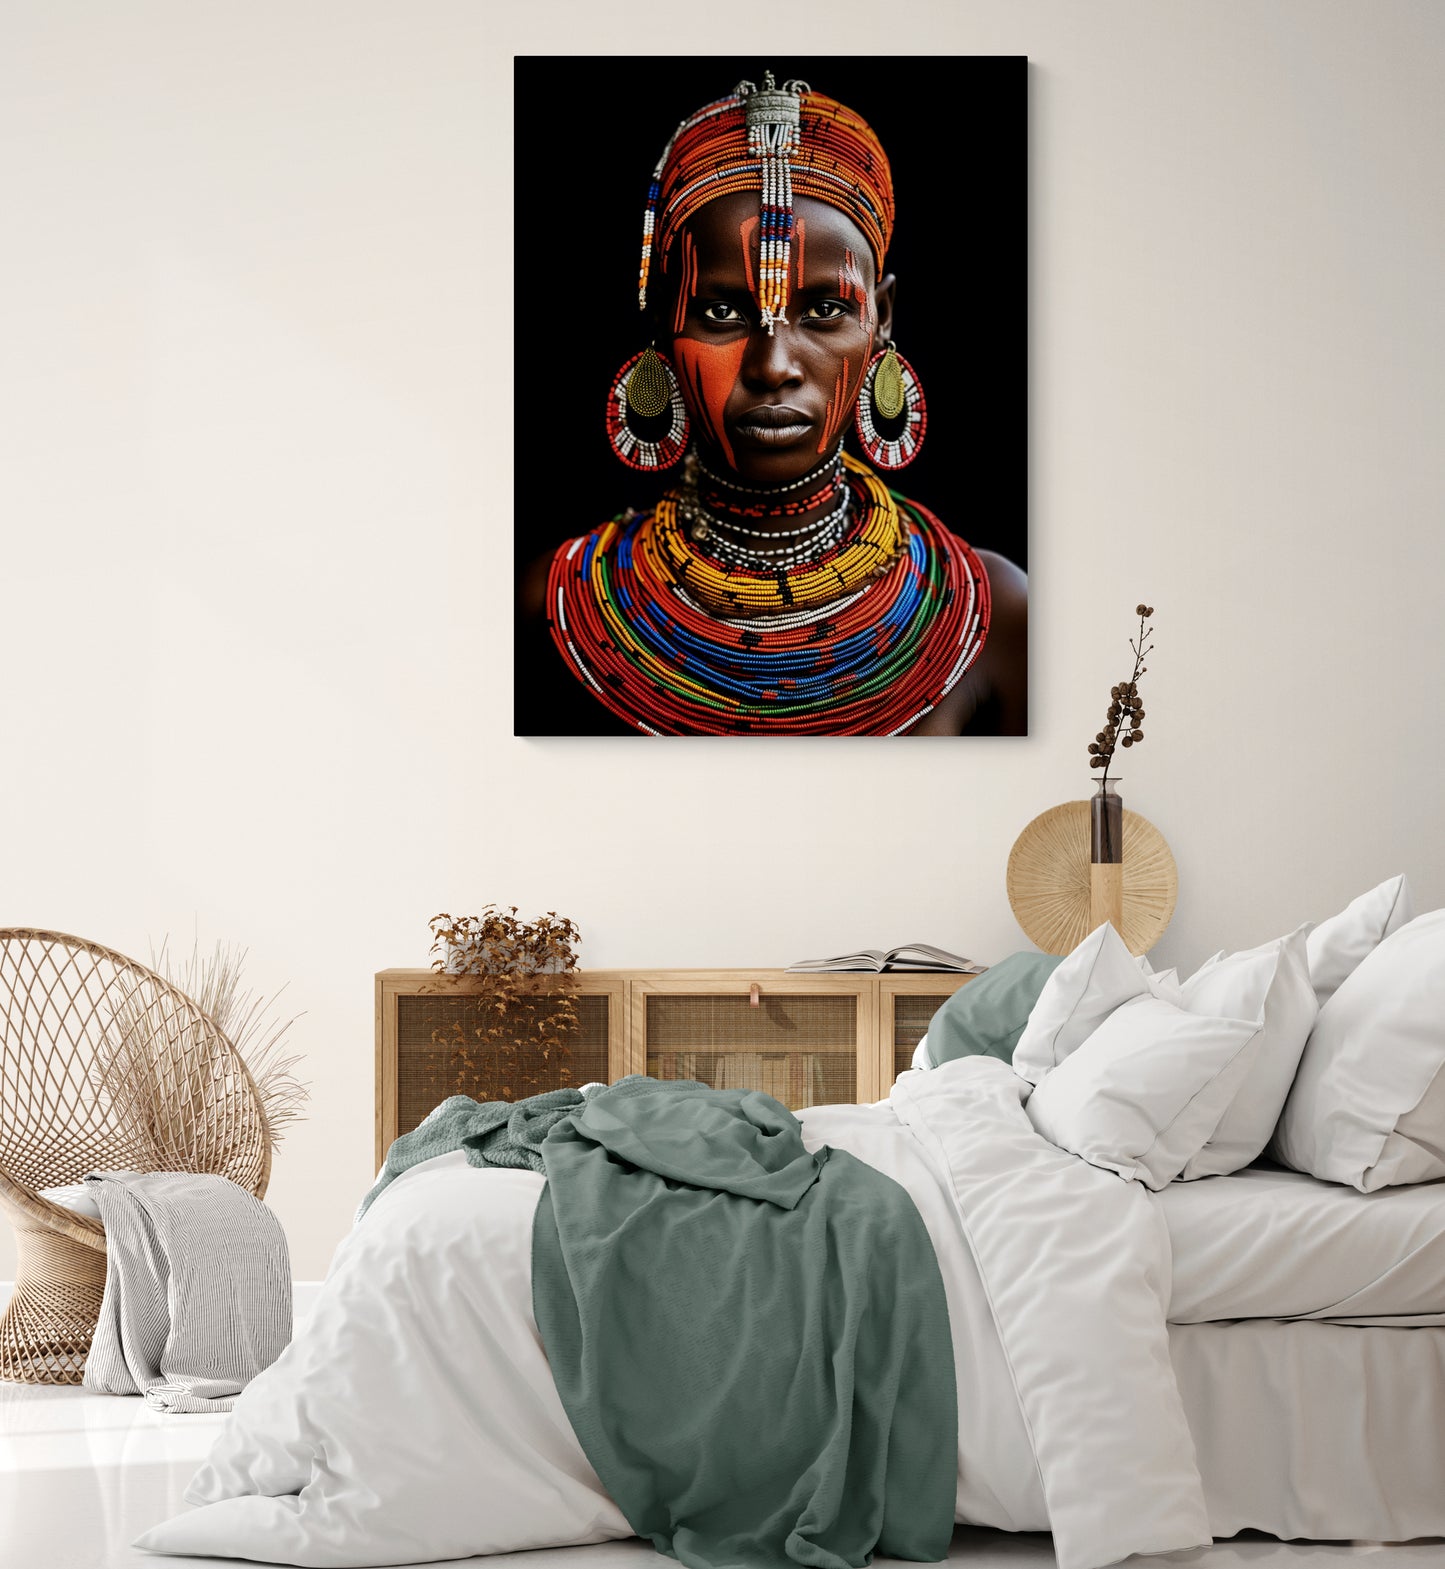 Tableau  portrait photo ethnique Africaine" dans une chambre adulte avec des matières naturelles et des couleurs douces.